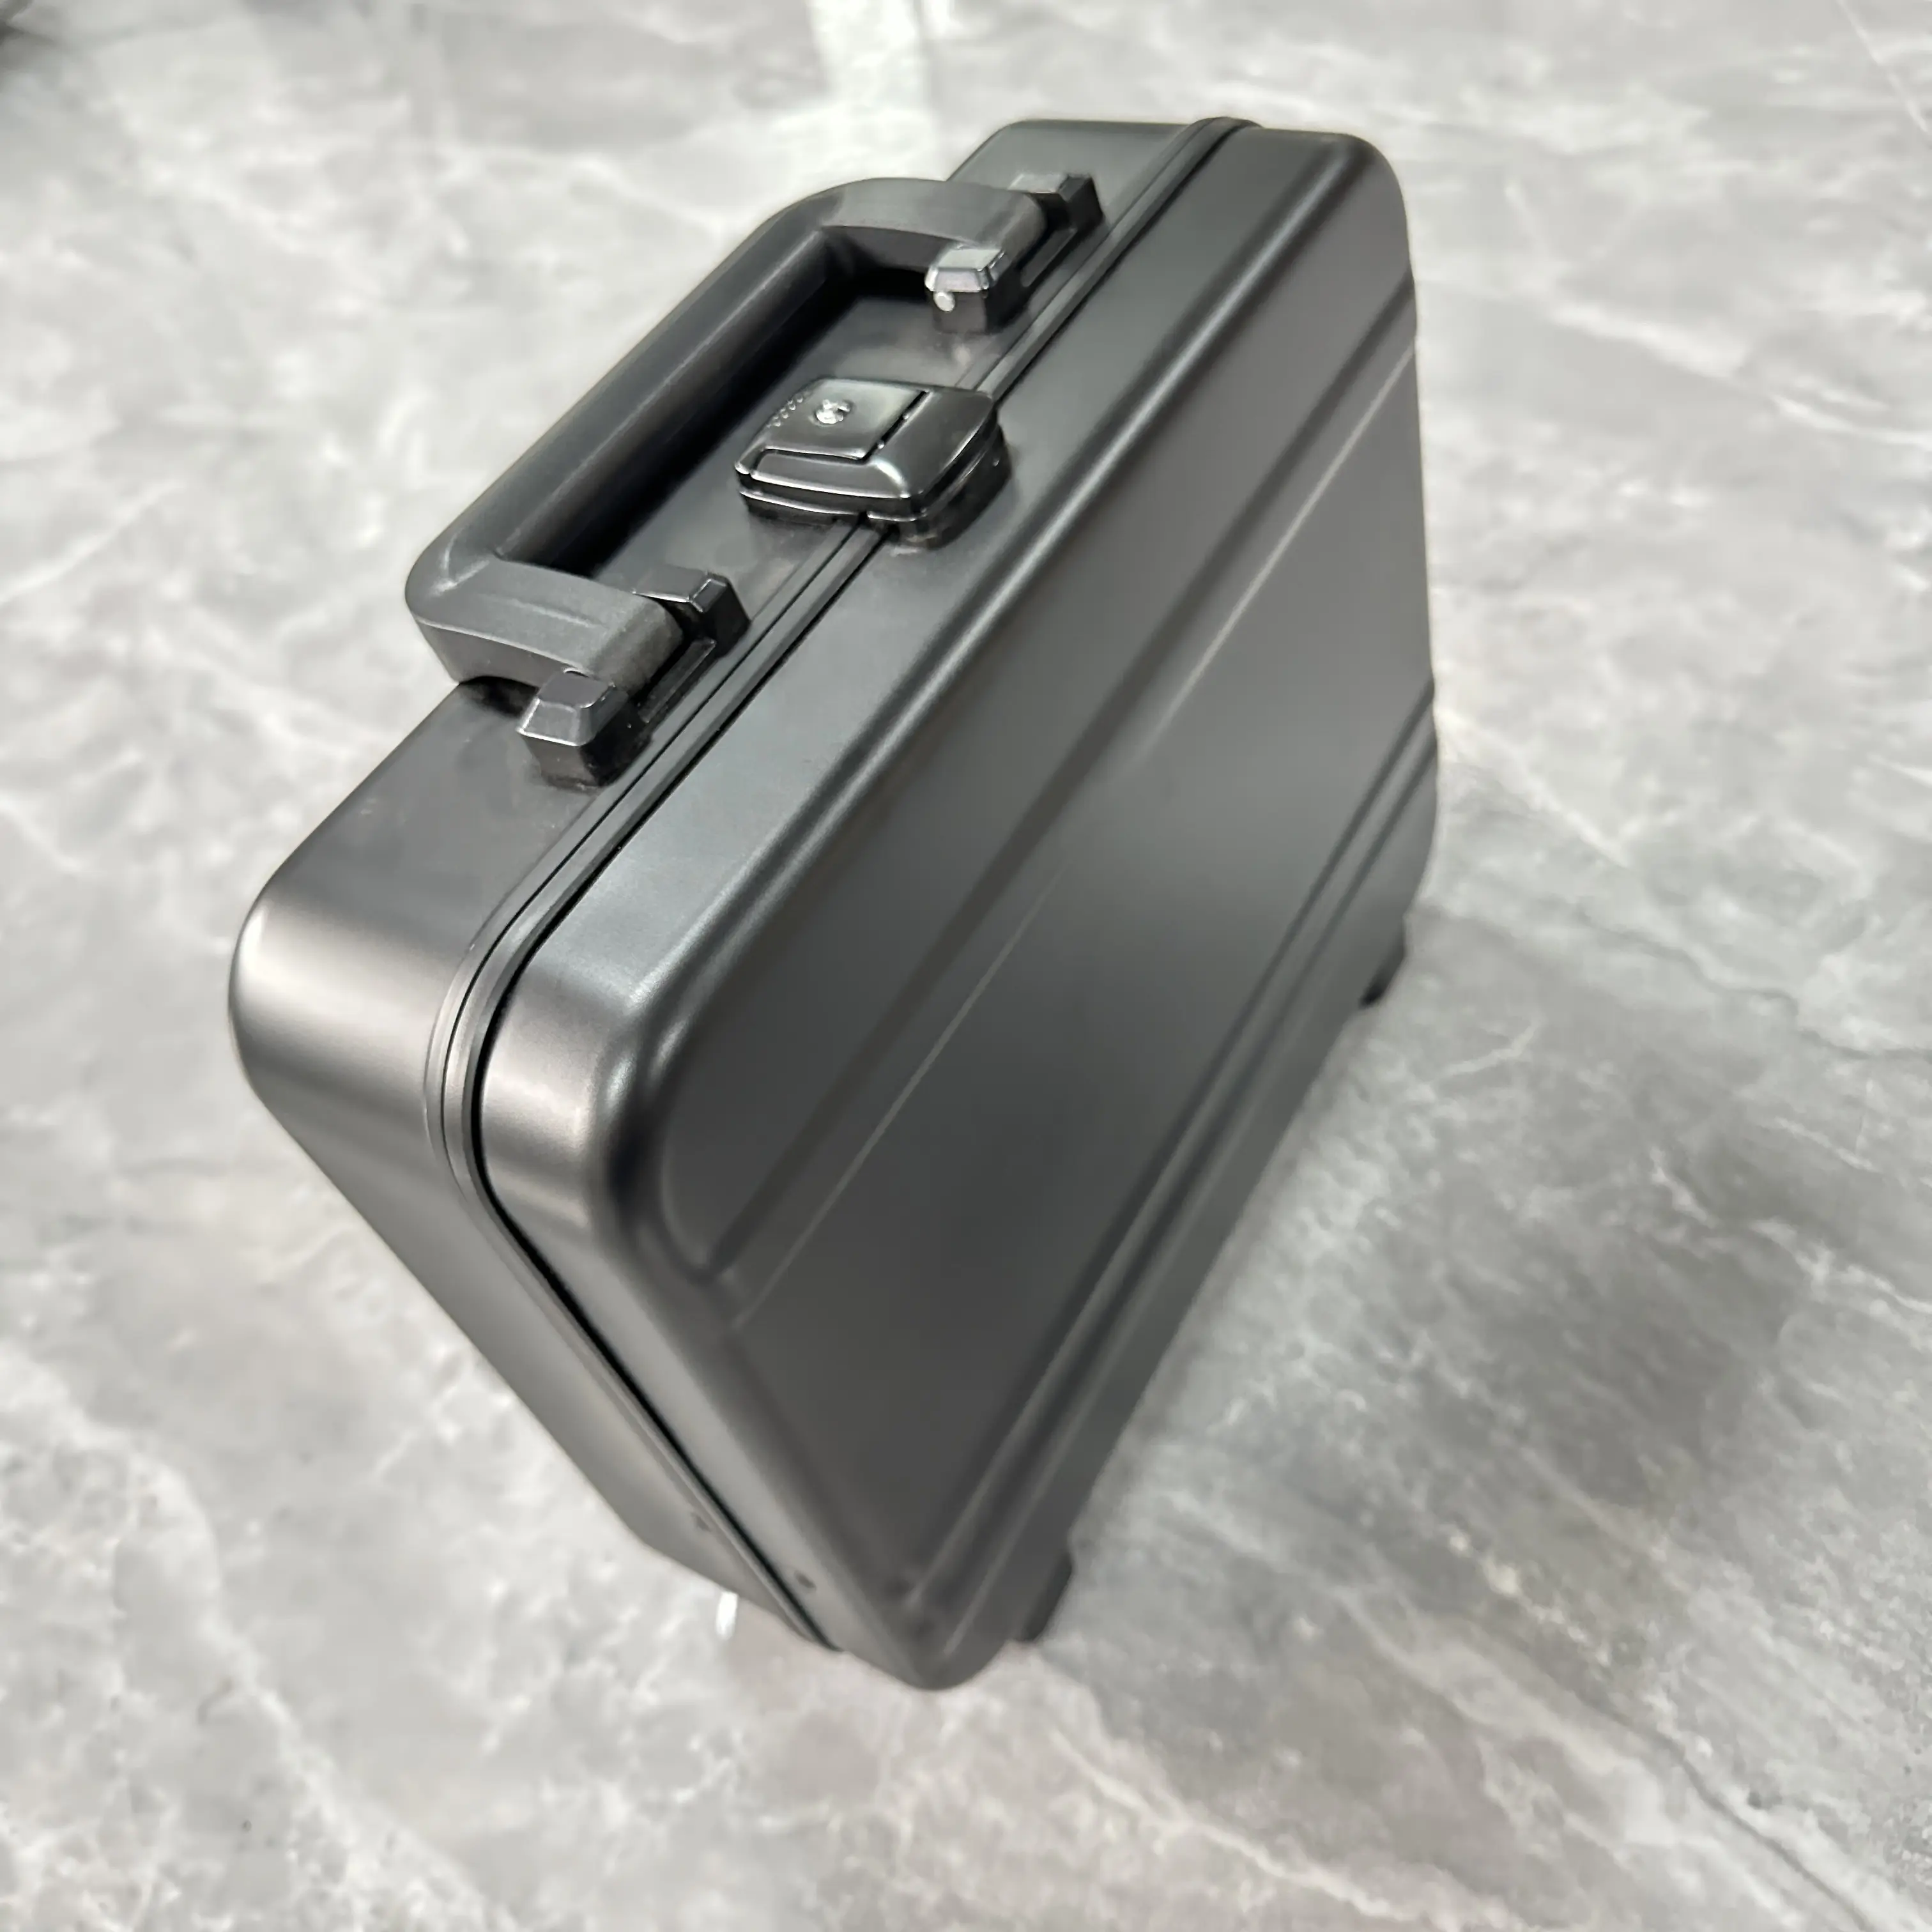 Водонепроницаемый caja para reloje карточка камеры для хранения часов портфель усилитель Полетный Футляр жесткие коробки для переноски алюминиевый футляр для инструментов